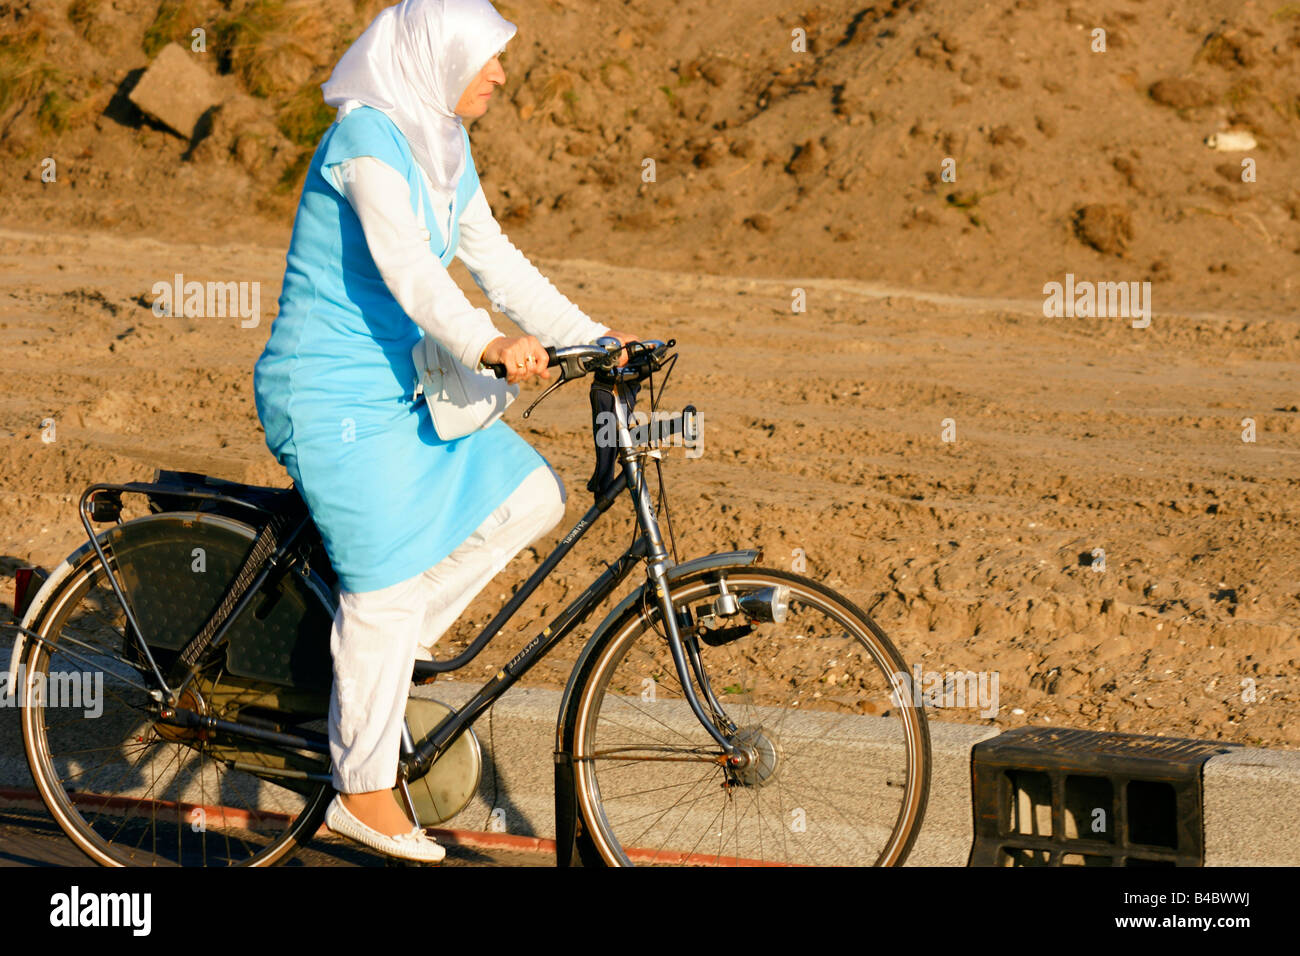 Moslim Muslem Frau Zyklus Fahrrad gekleidet im traditionellen arabischen  Stil mit Kopftuch in Niederlande Stockfotografie - Alamy